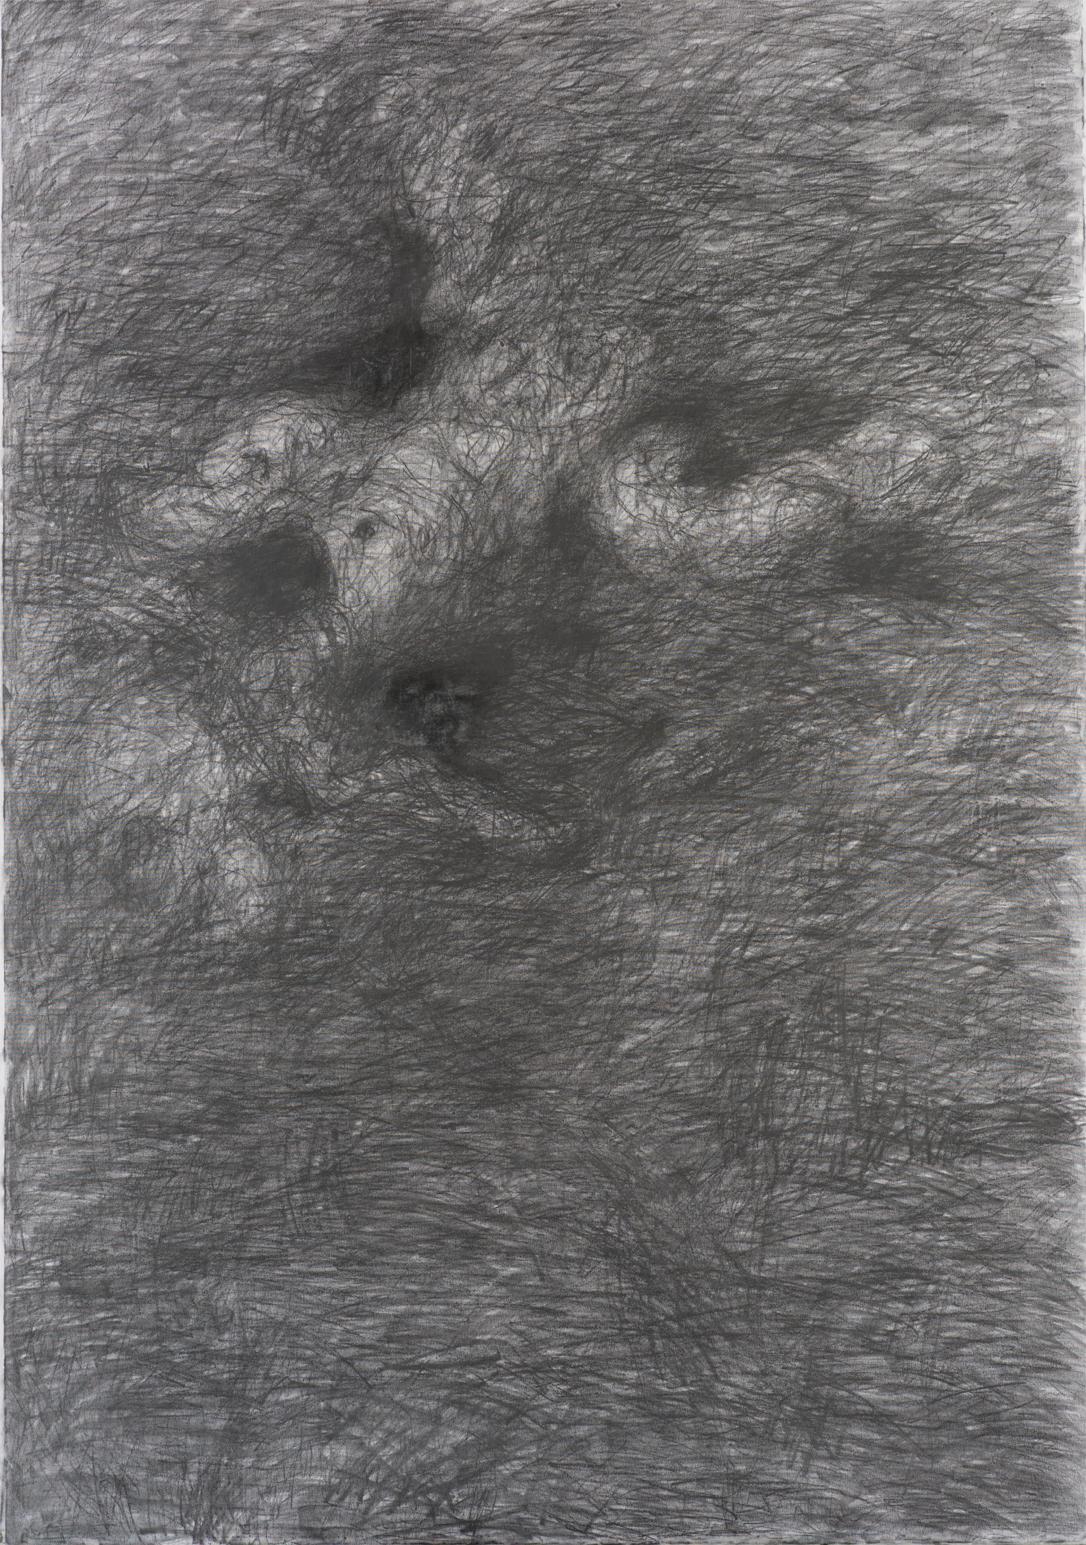 Zsolt Berszán Abstract Drawing – Ohne Titel 02 - Zeitgenössische Kunst, Abstrakt, Zeichnung auf Leinwand, Grau, Monochrom